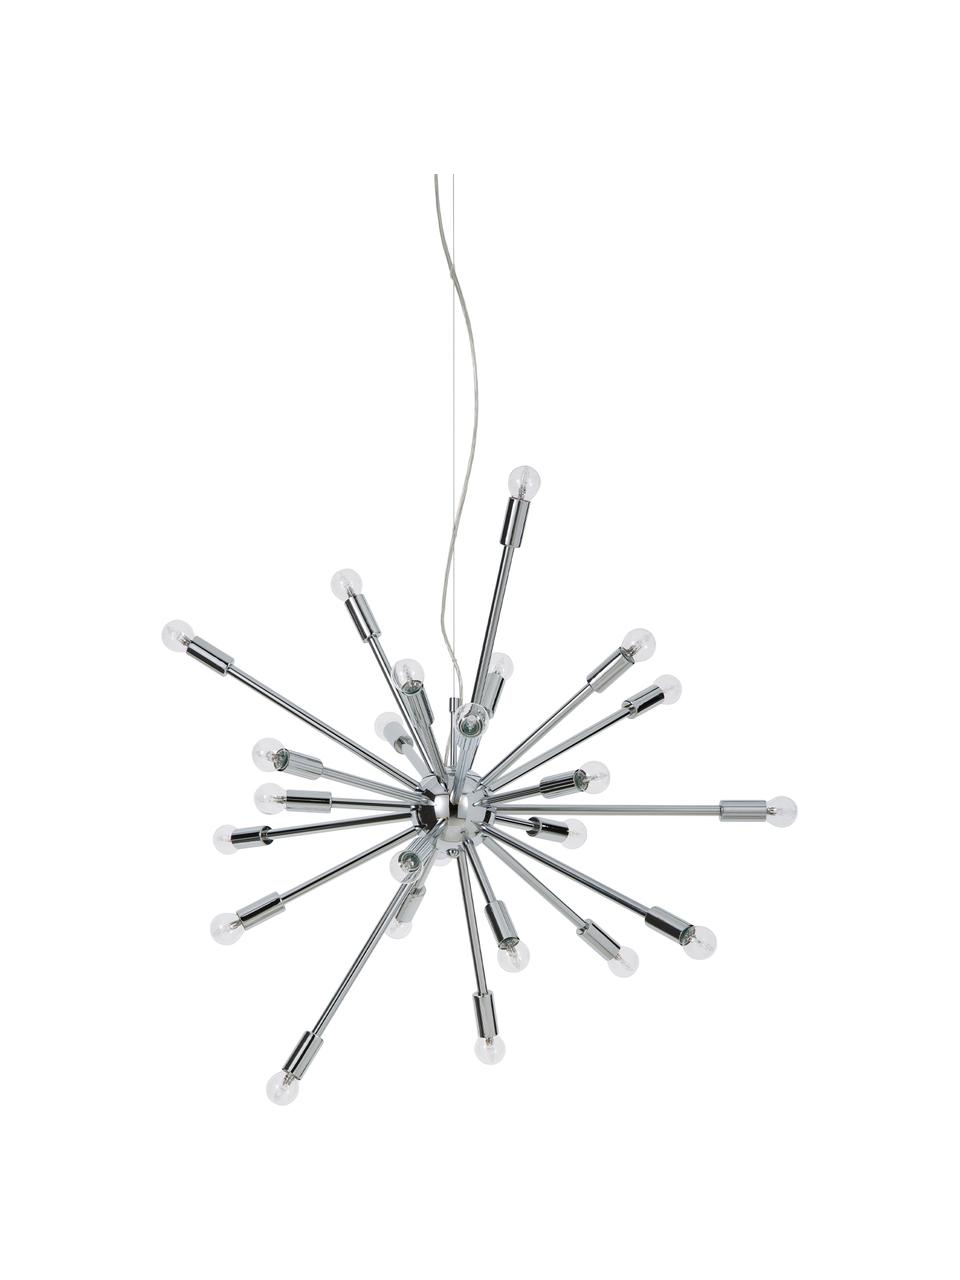 Große Pendelleuchte Spike in Chrom, Lampenschirm: Metall, verchromt, Baldachin: Metall, verchromt, Chrom, Ø 90 cm